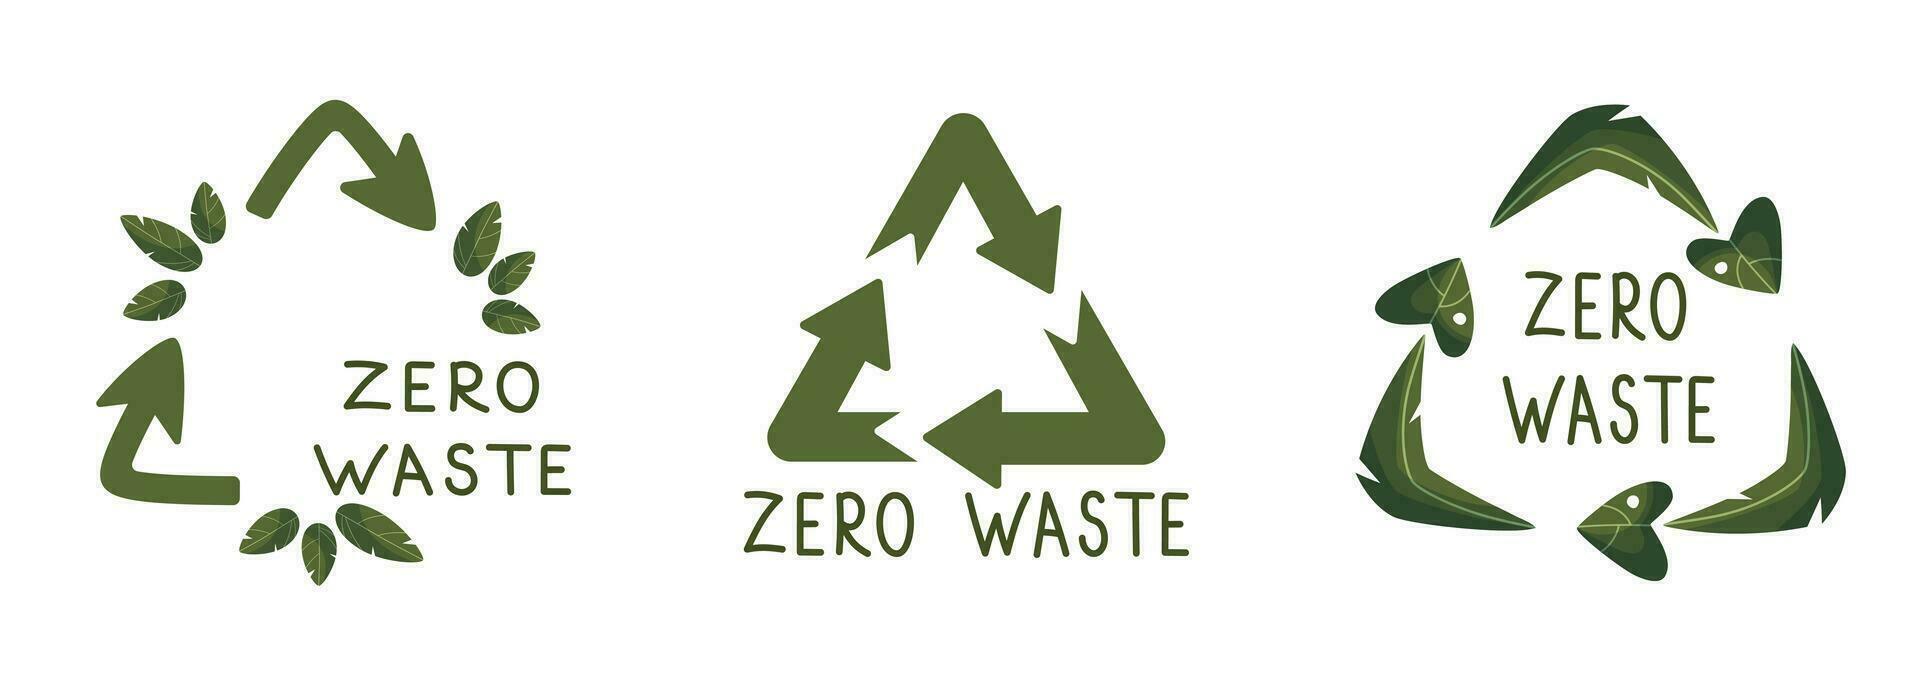 Null Abfall Etiketten. Grün Öko freundlich Etikett, reduzieren Abfall und recyceln Symbol mit Pflanze Blätter Vektor Satz. Nein Plastik ökologisch Schutz Logo mit Grün